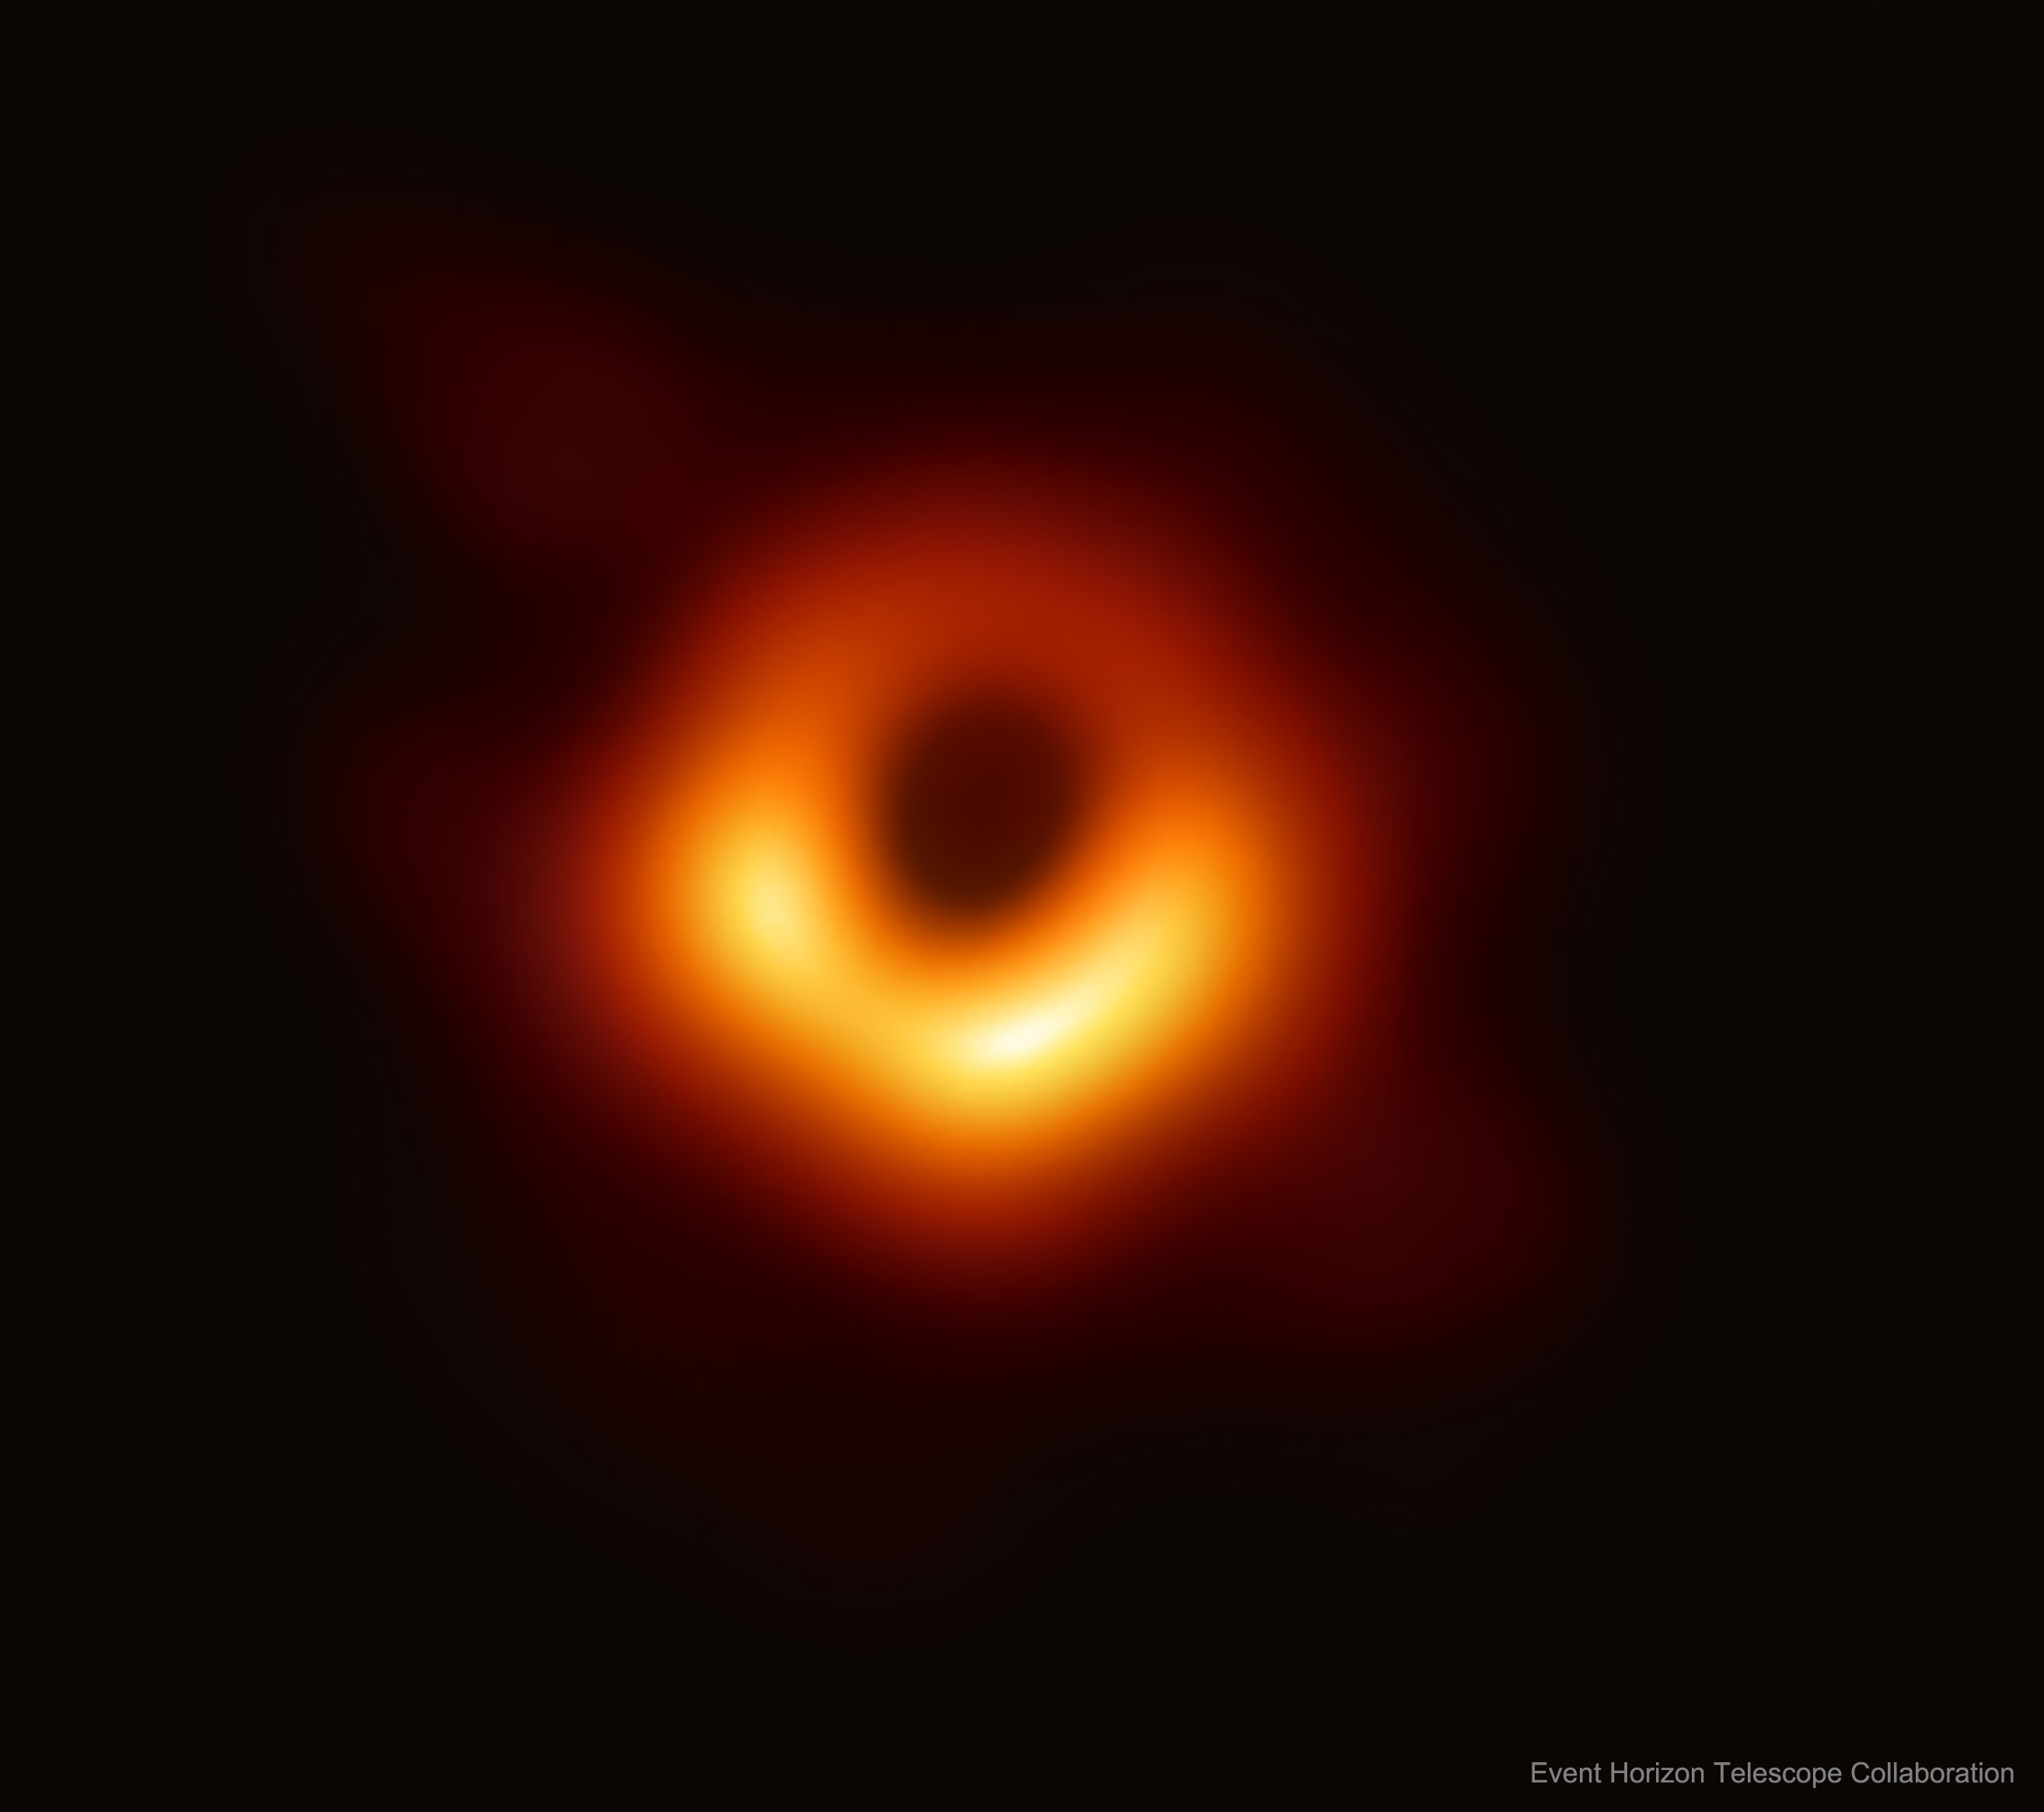 Figura 1. Imagen integrada del agujero negro en el centro de la galaxia M87. Tomada de https://apod.nasa.gov/apod/ap190411.html